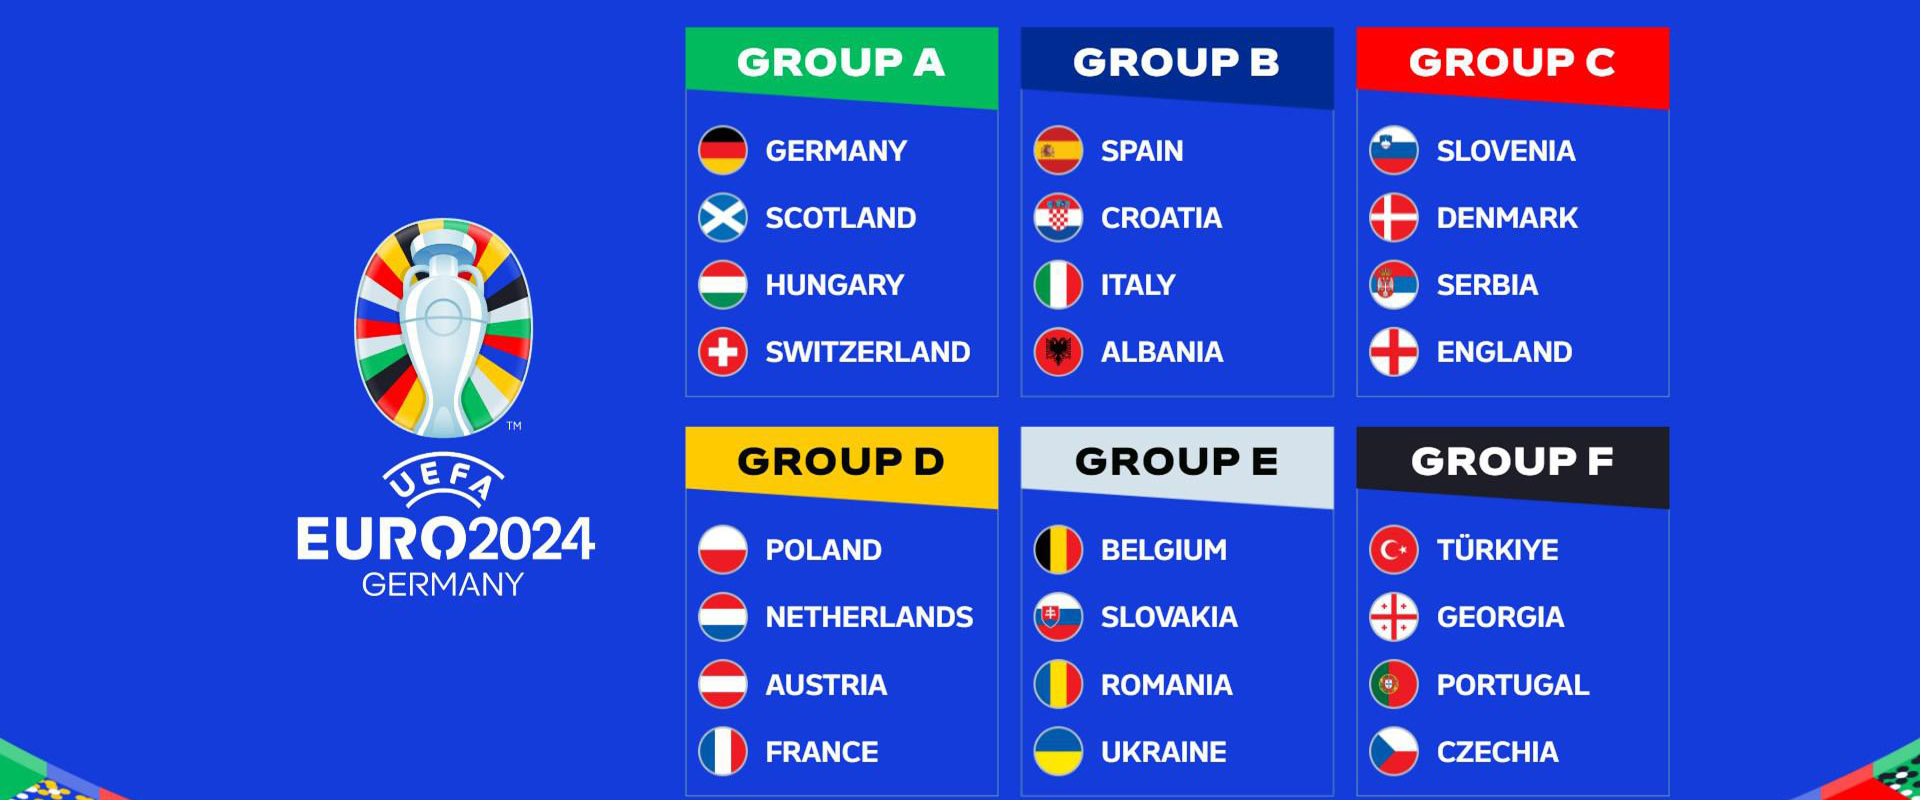 EURO 2024 FIXTURES - Group Stage Match Fixtures & Schedule - EURO 2024 Full Fixtures